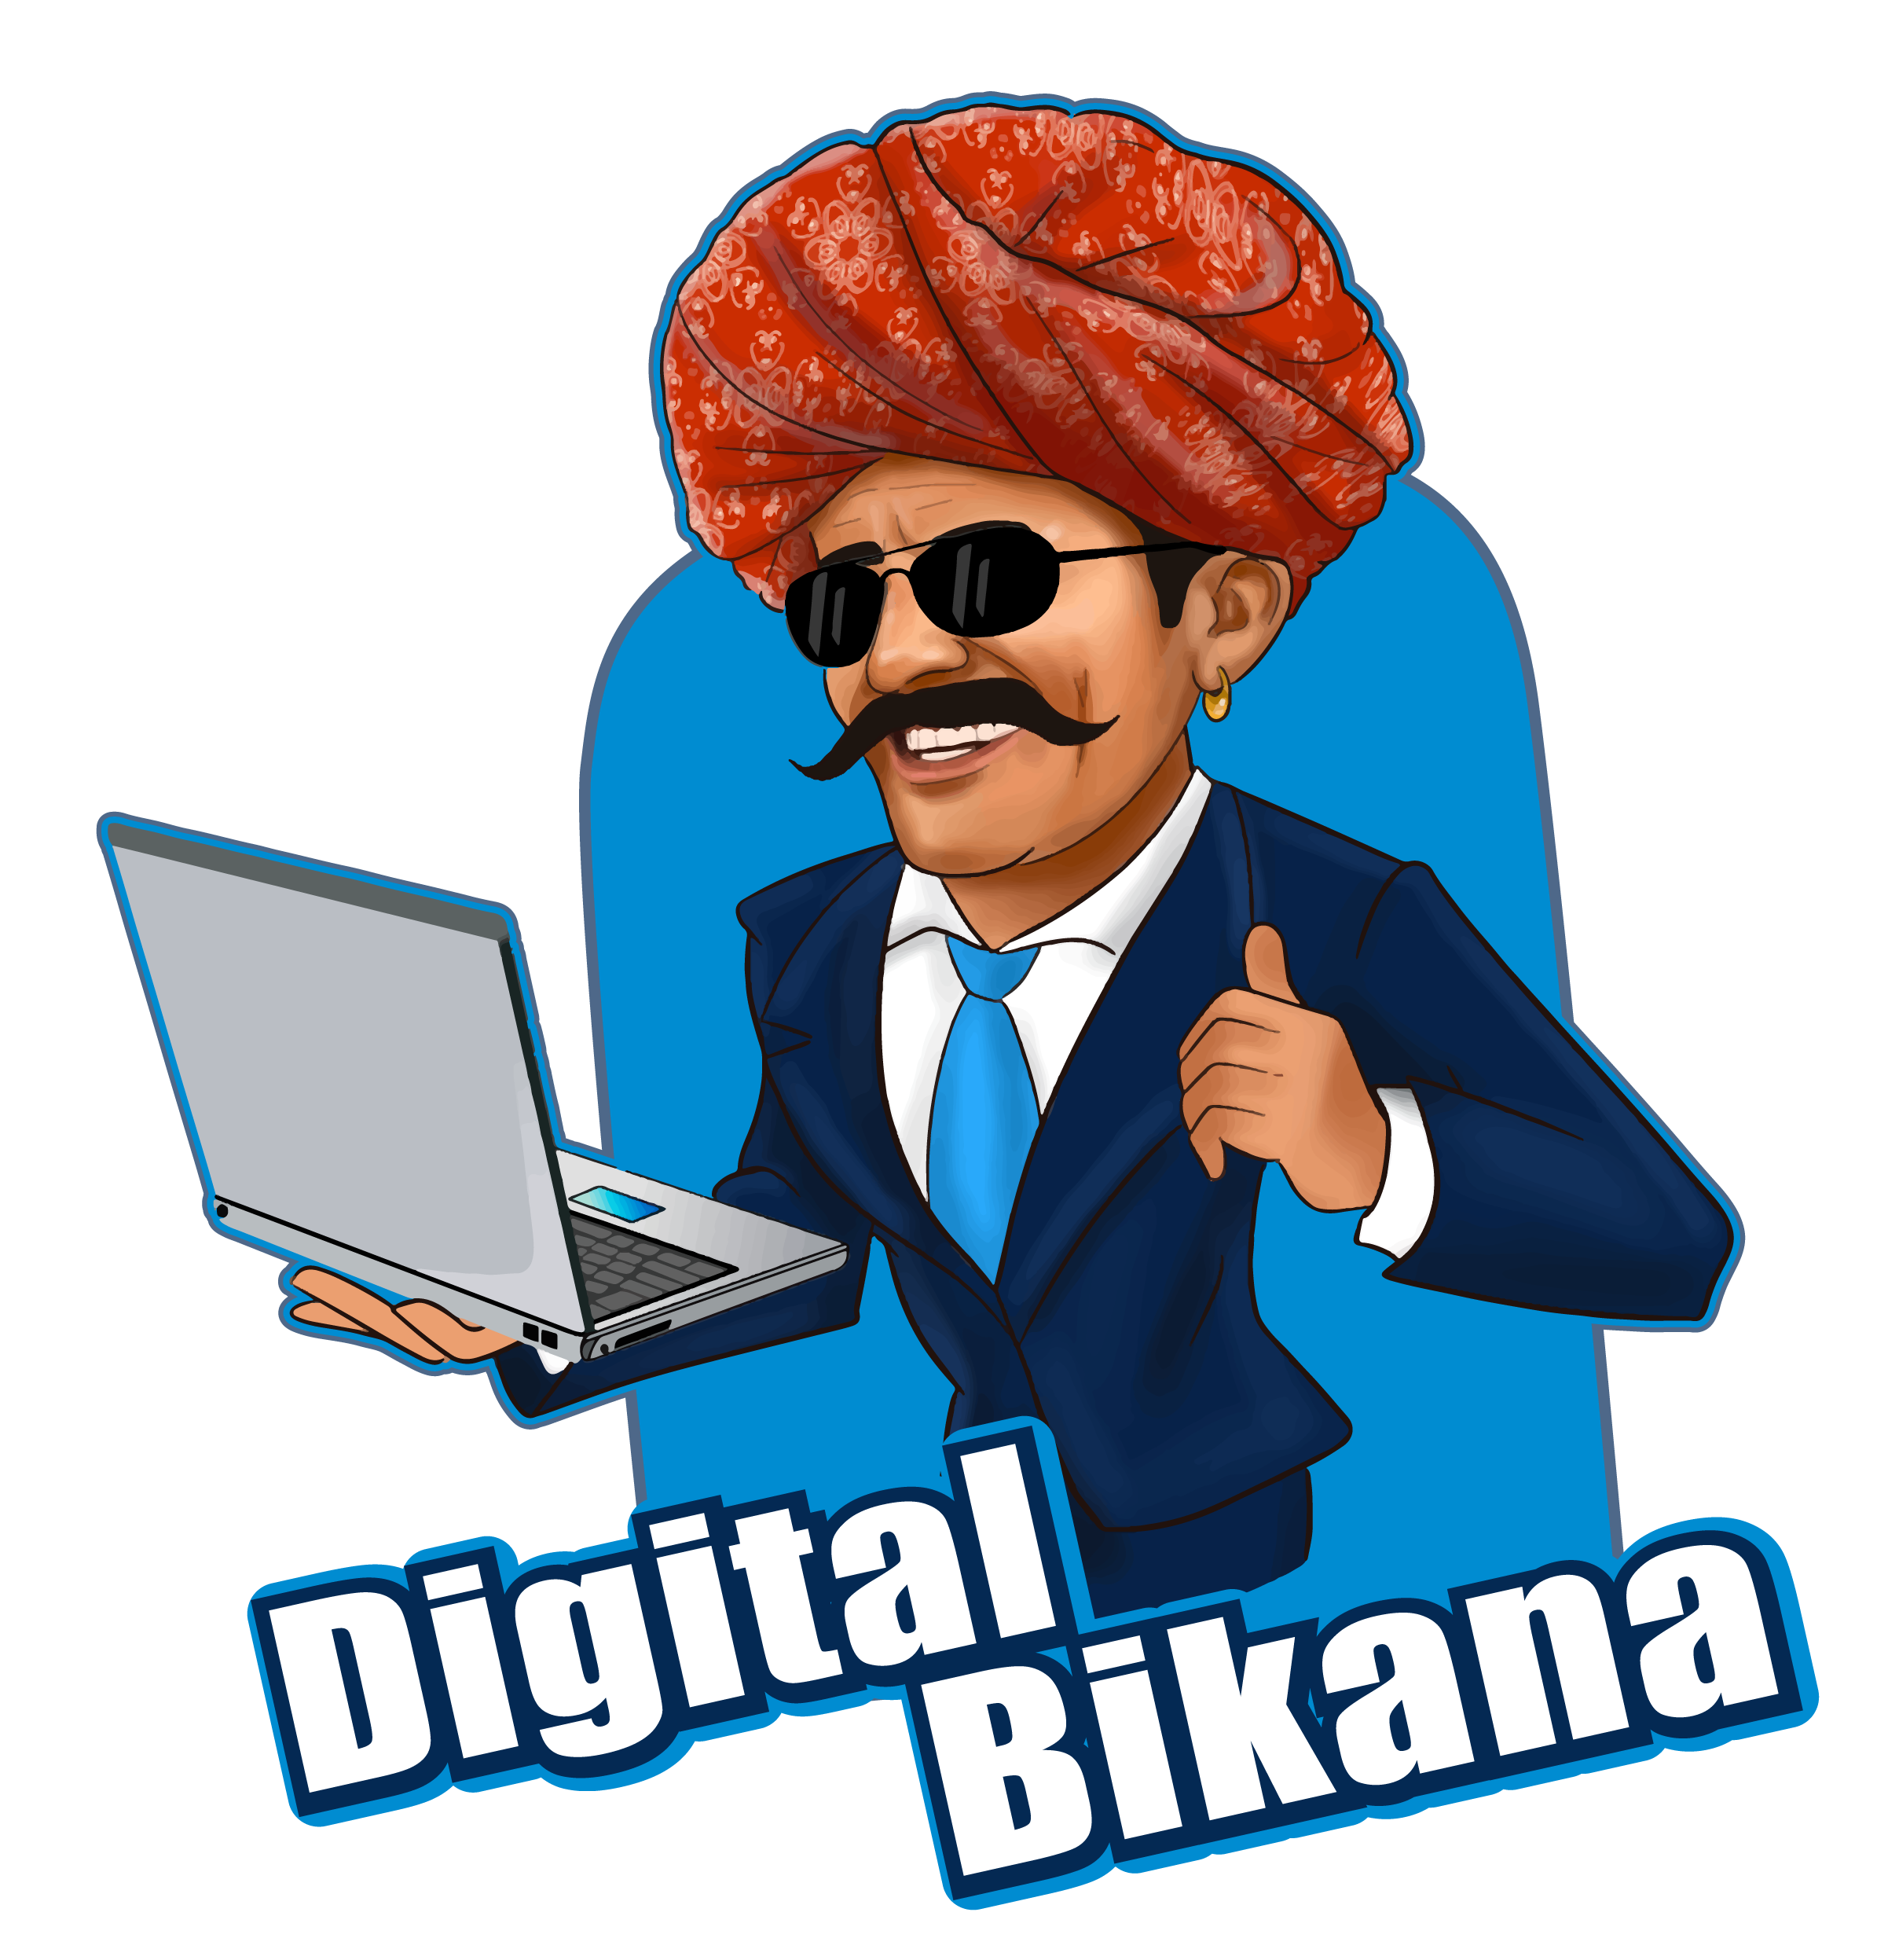 Digital marketing course in Bikaner